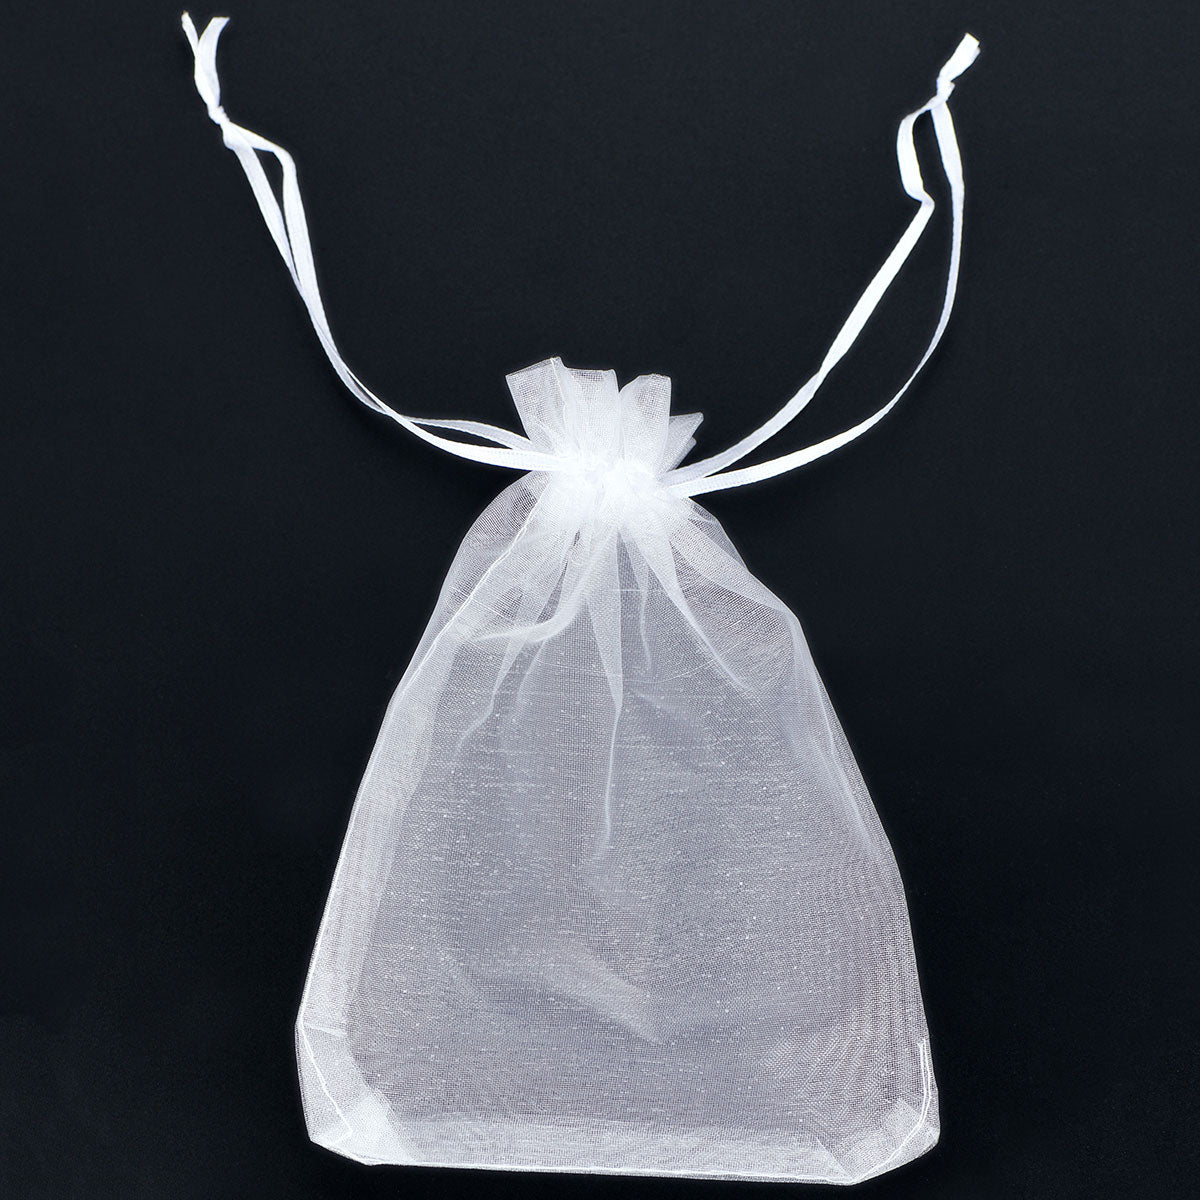 100PCS Sheer Organza Bags,Small Mesh Bags Drawstring for Small